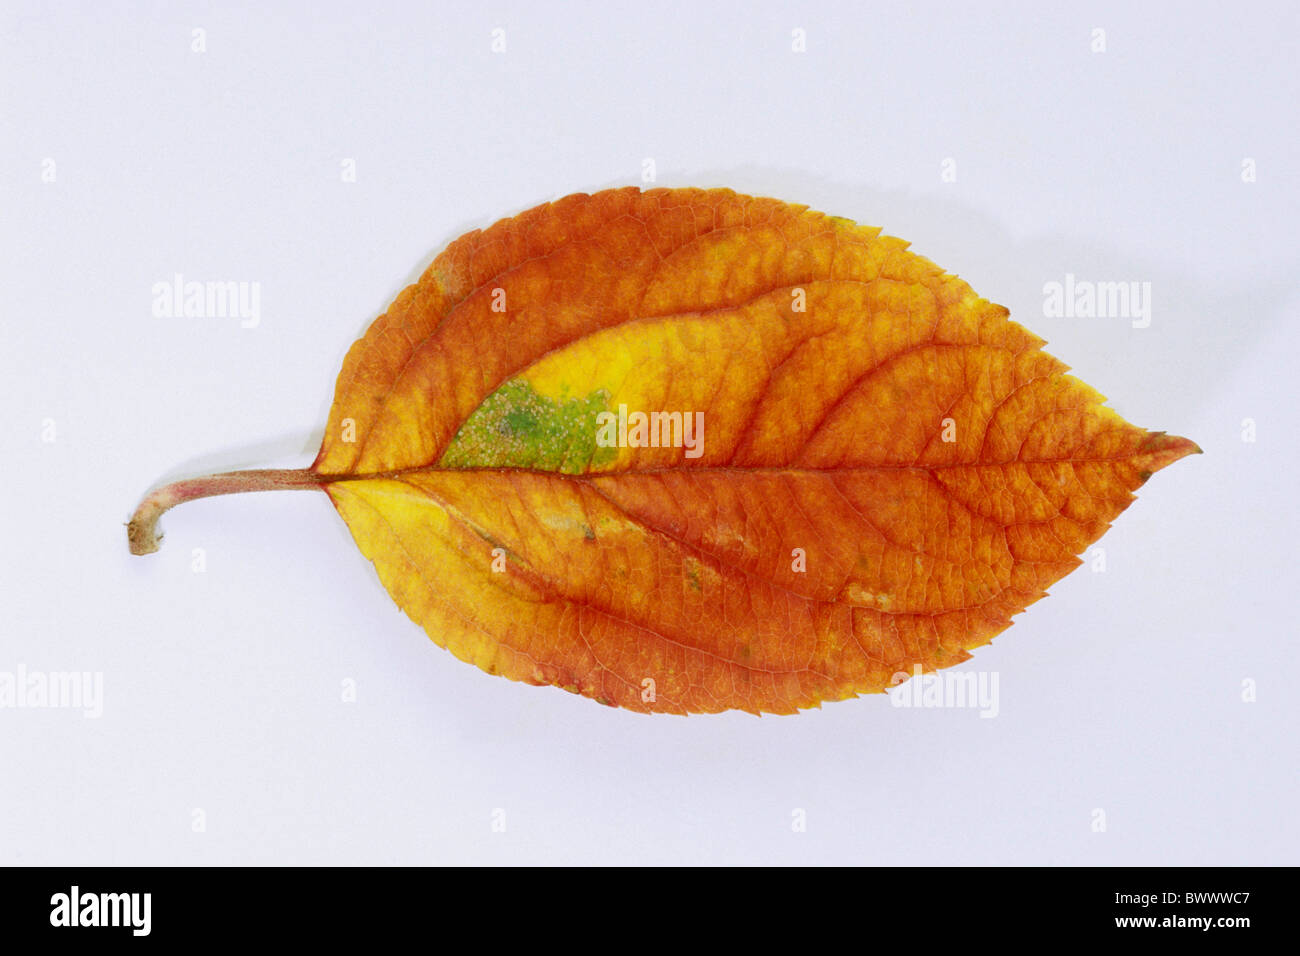 Domestic Apple (Malus domestica), autumn leaf, studio picture. Stock Photo